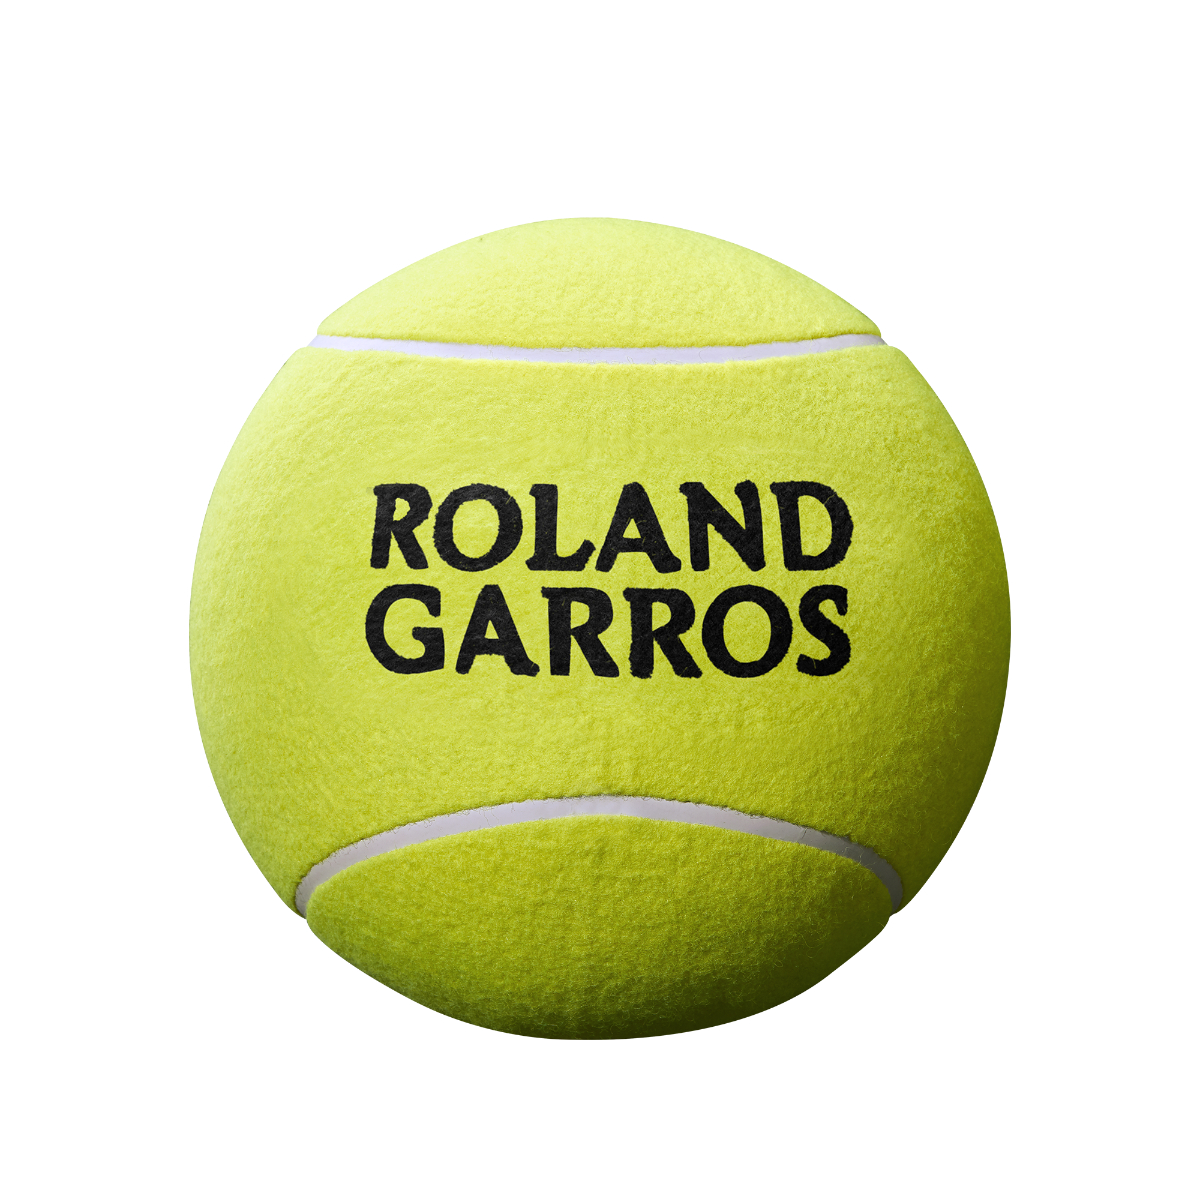 фото Теннисный мяч wilson roland garros 9 jumbo 1 шт yellow